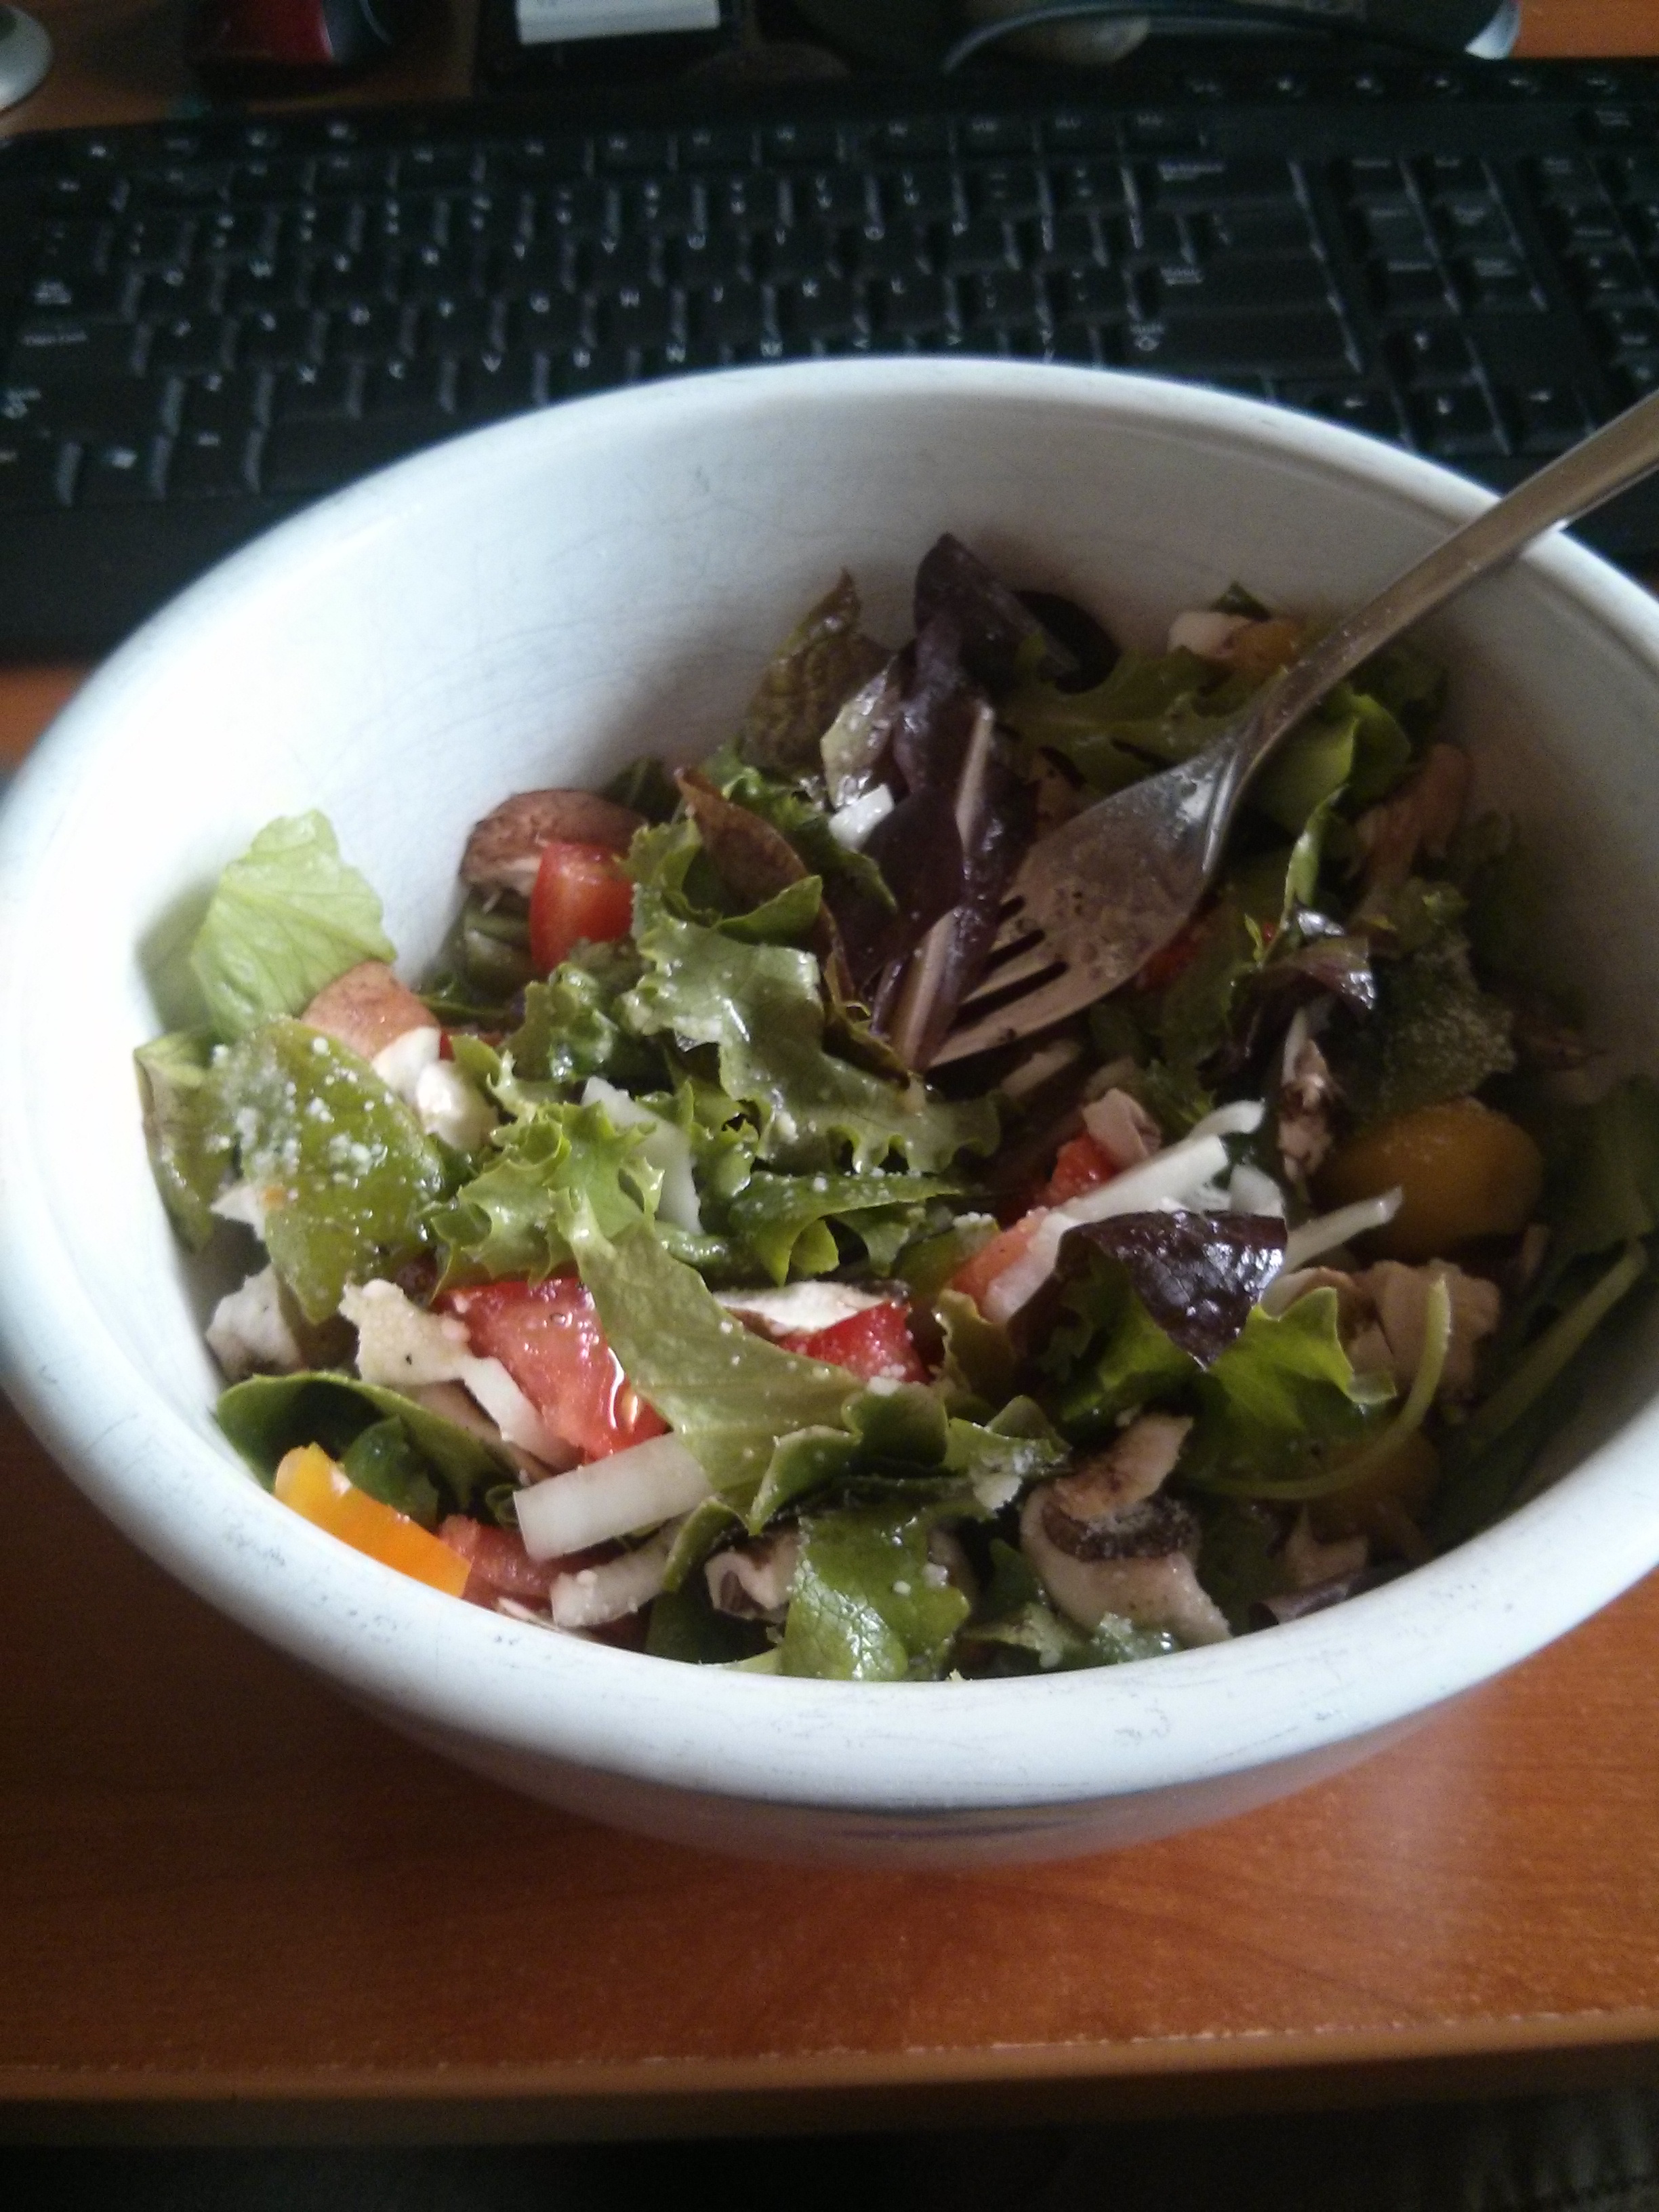 Home grown salad